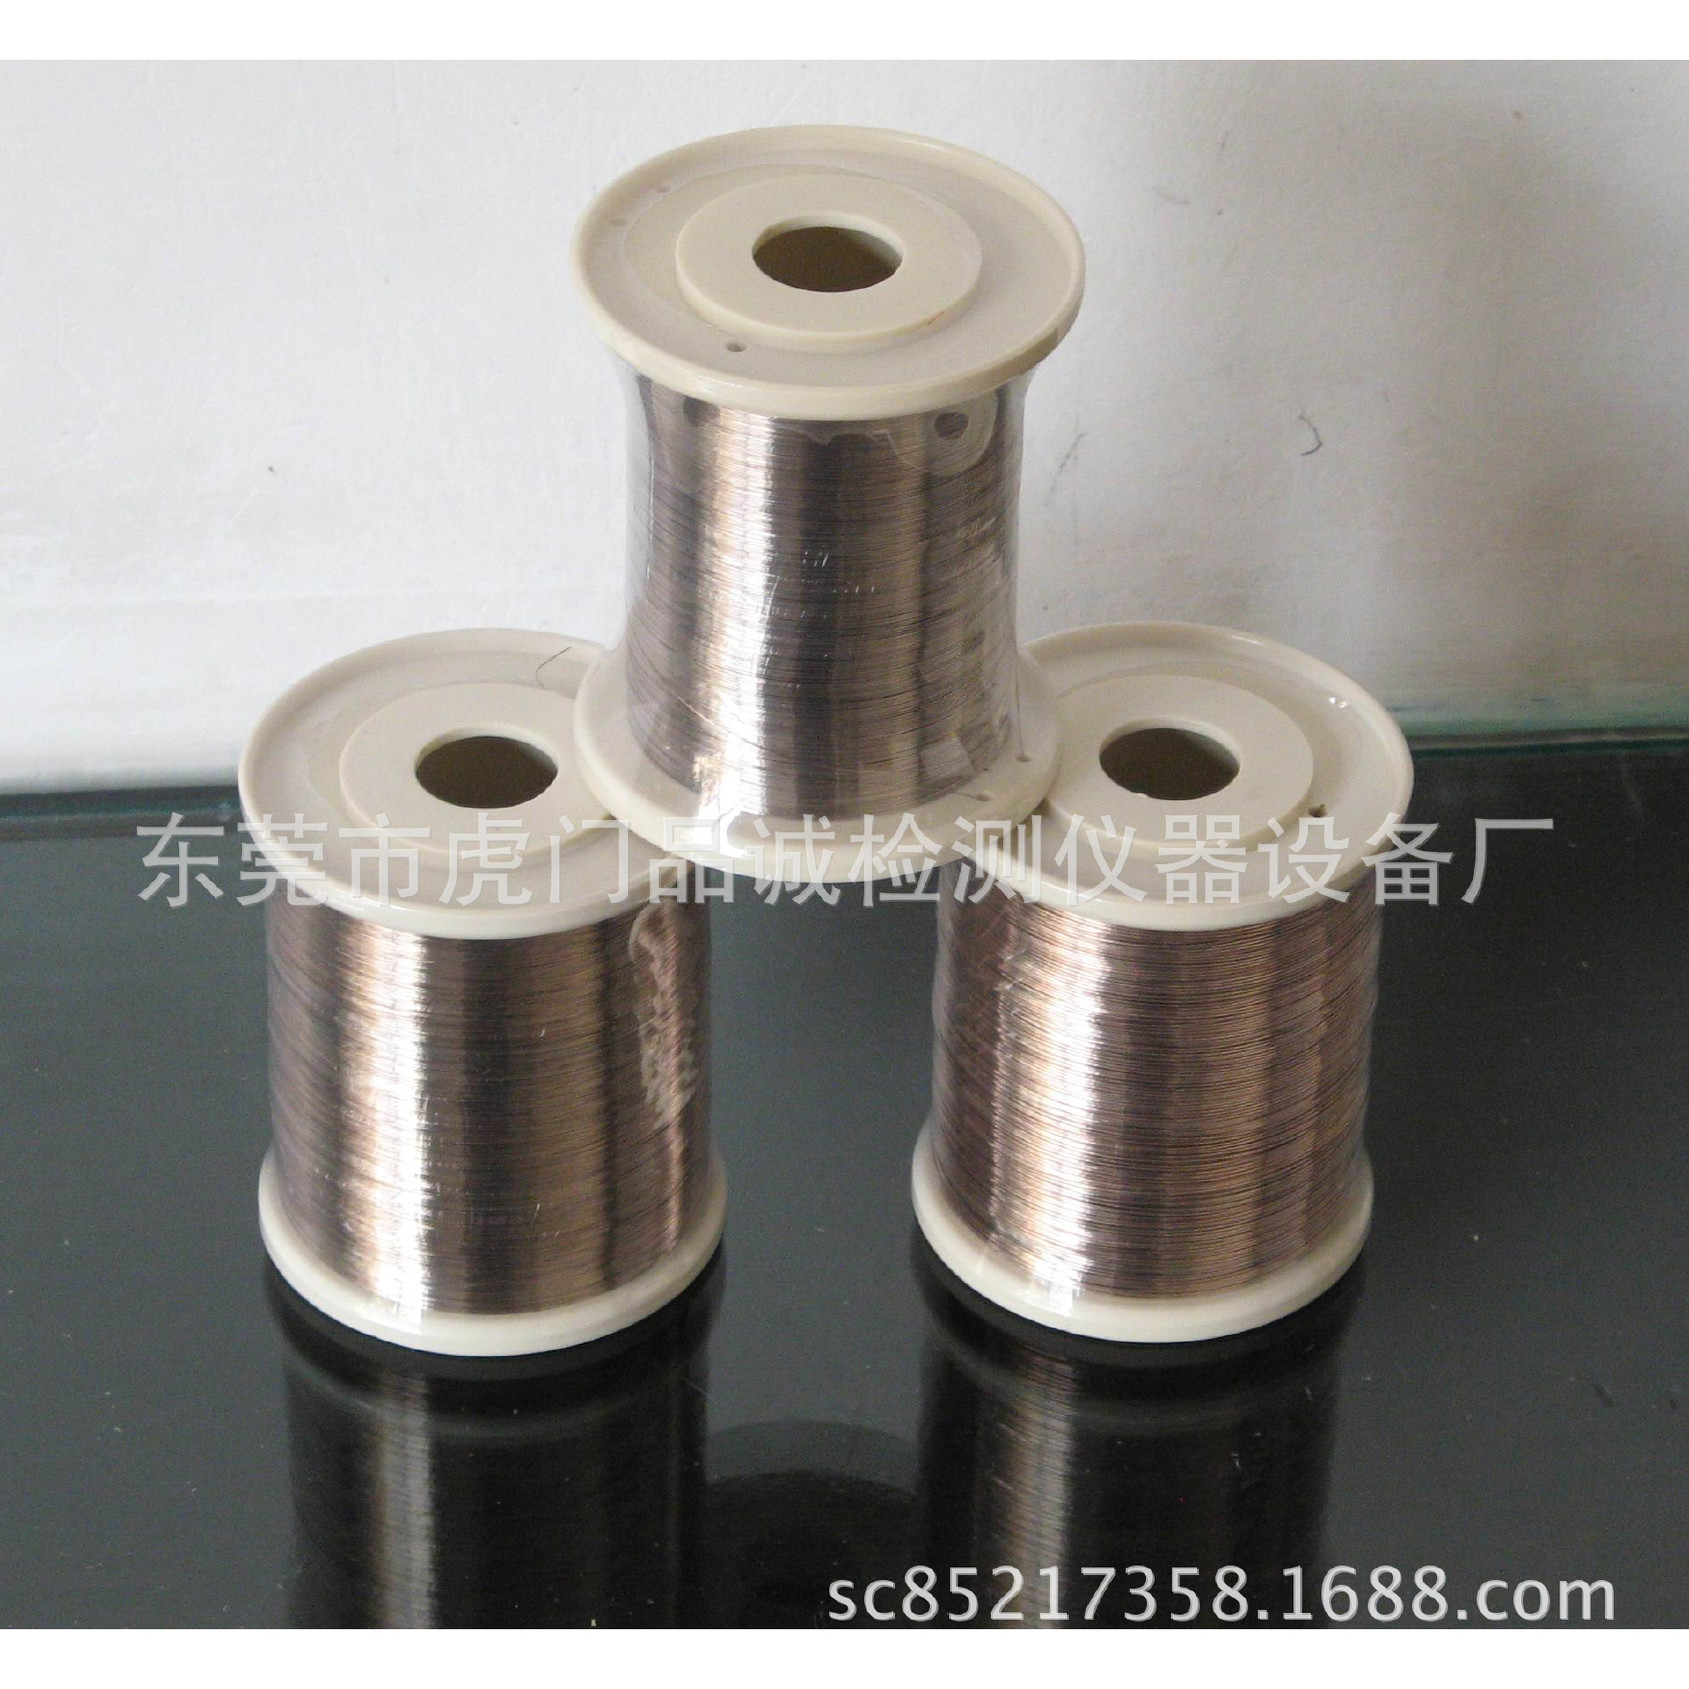 特价供银焊丝 银丝 铜线专用银焊丝 银丝 焊丝 0.2mm银焊丝示例图9